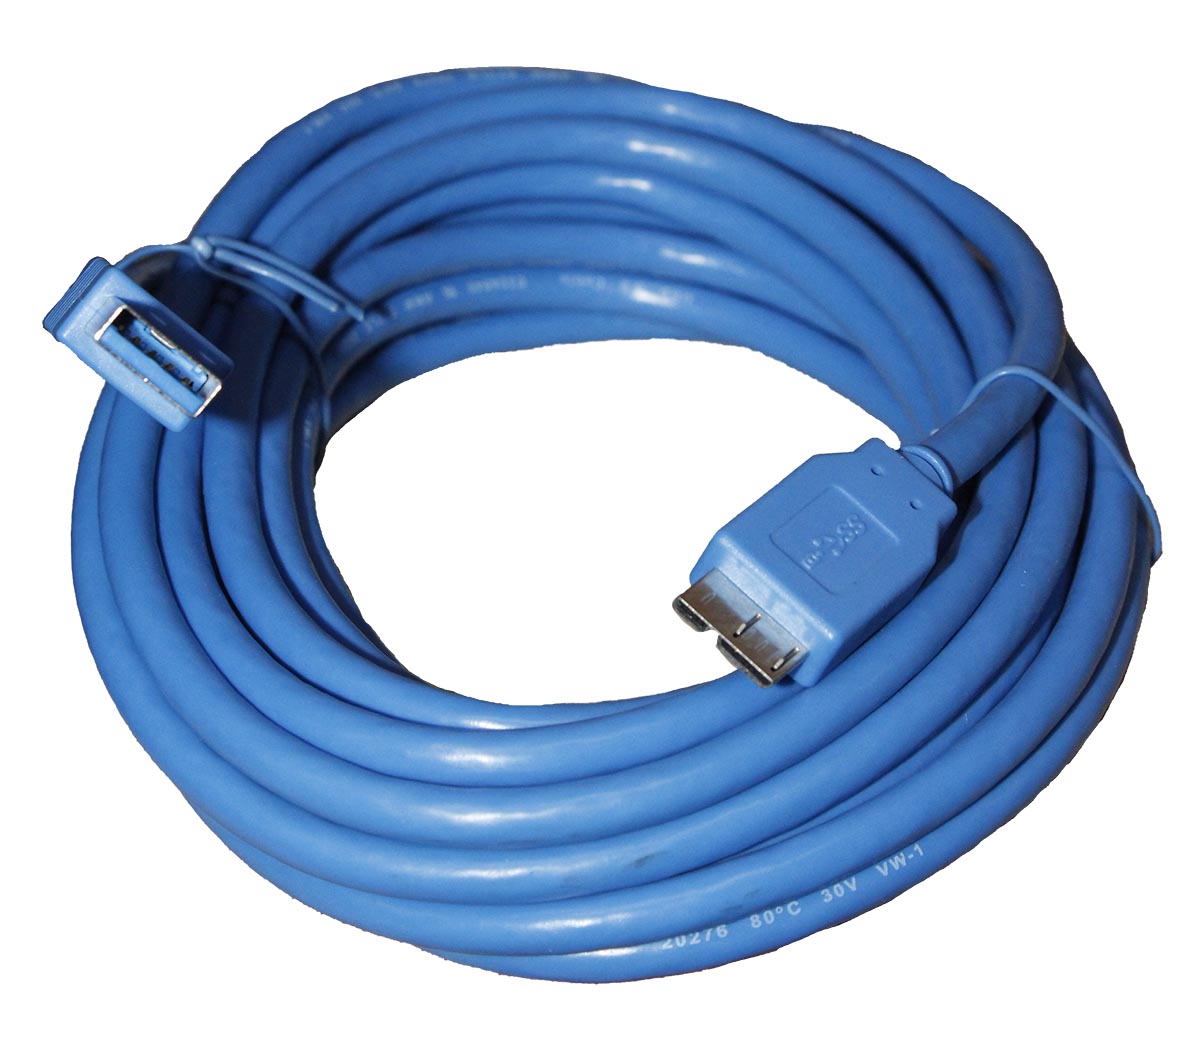 Cable de USB tipo A macho a USB tipo B macho 5m - EC1395M - TRANSMEDIA